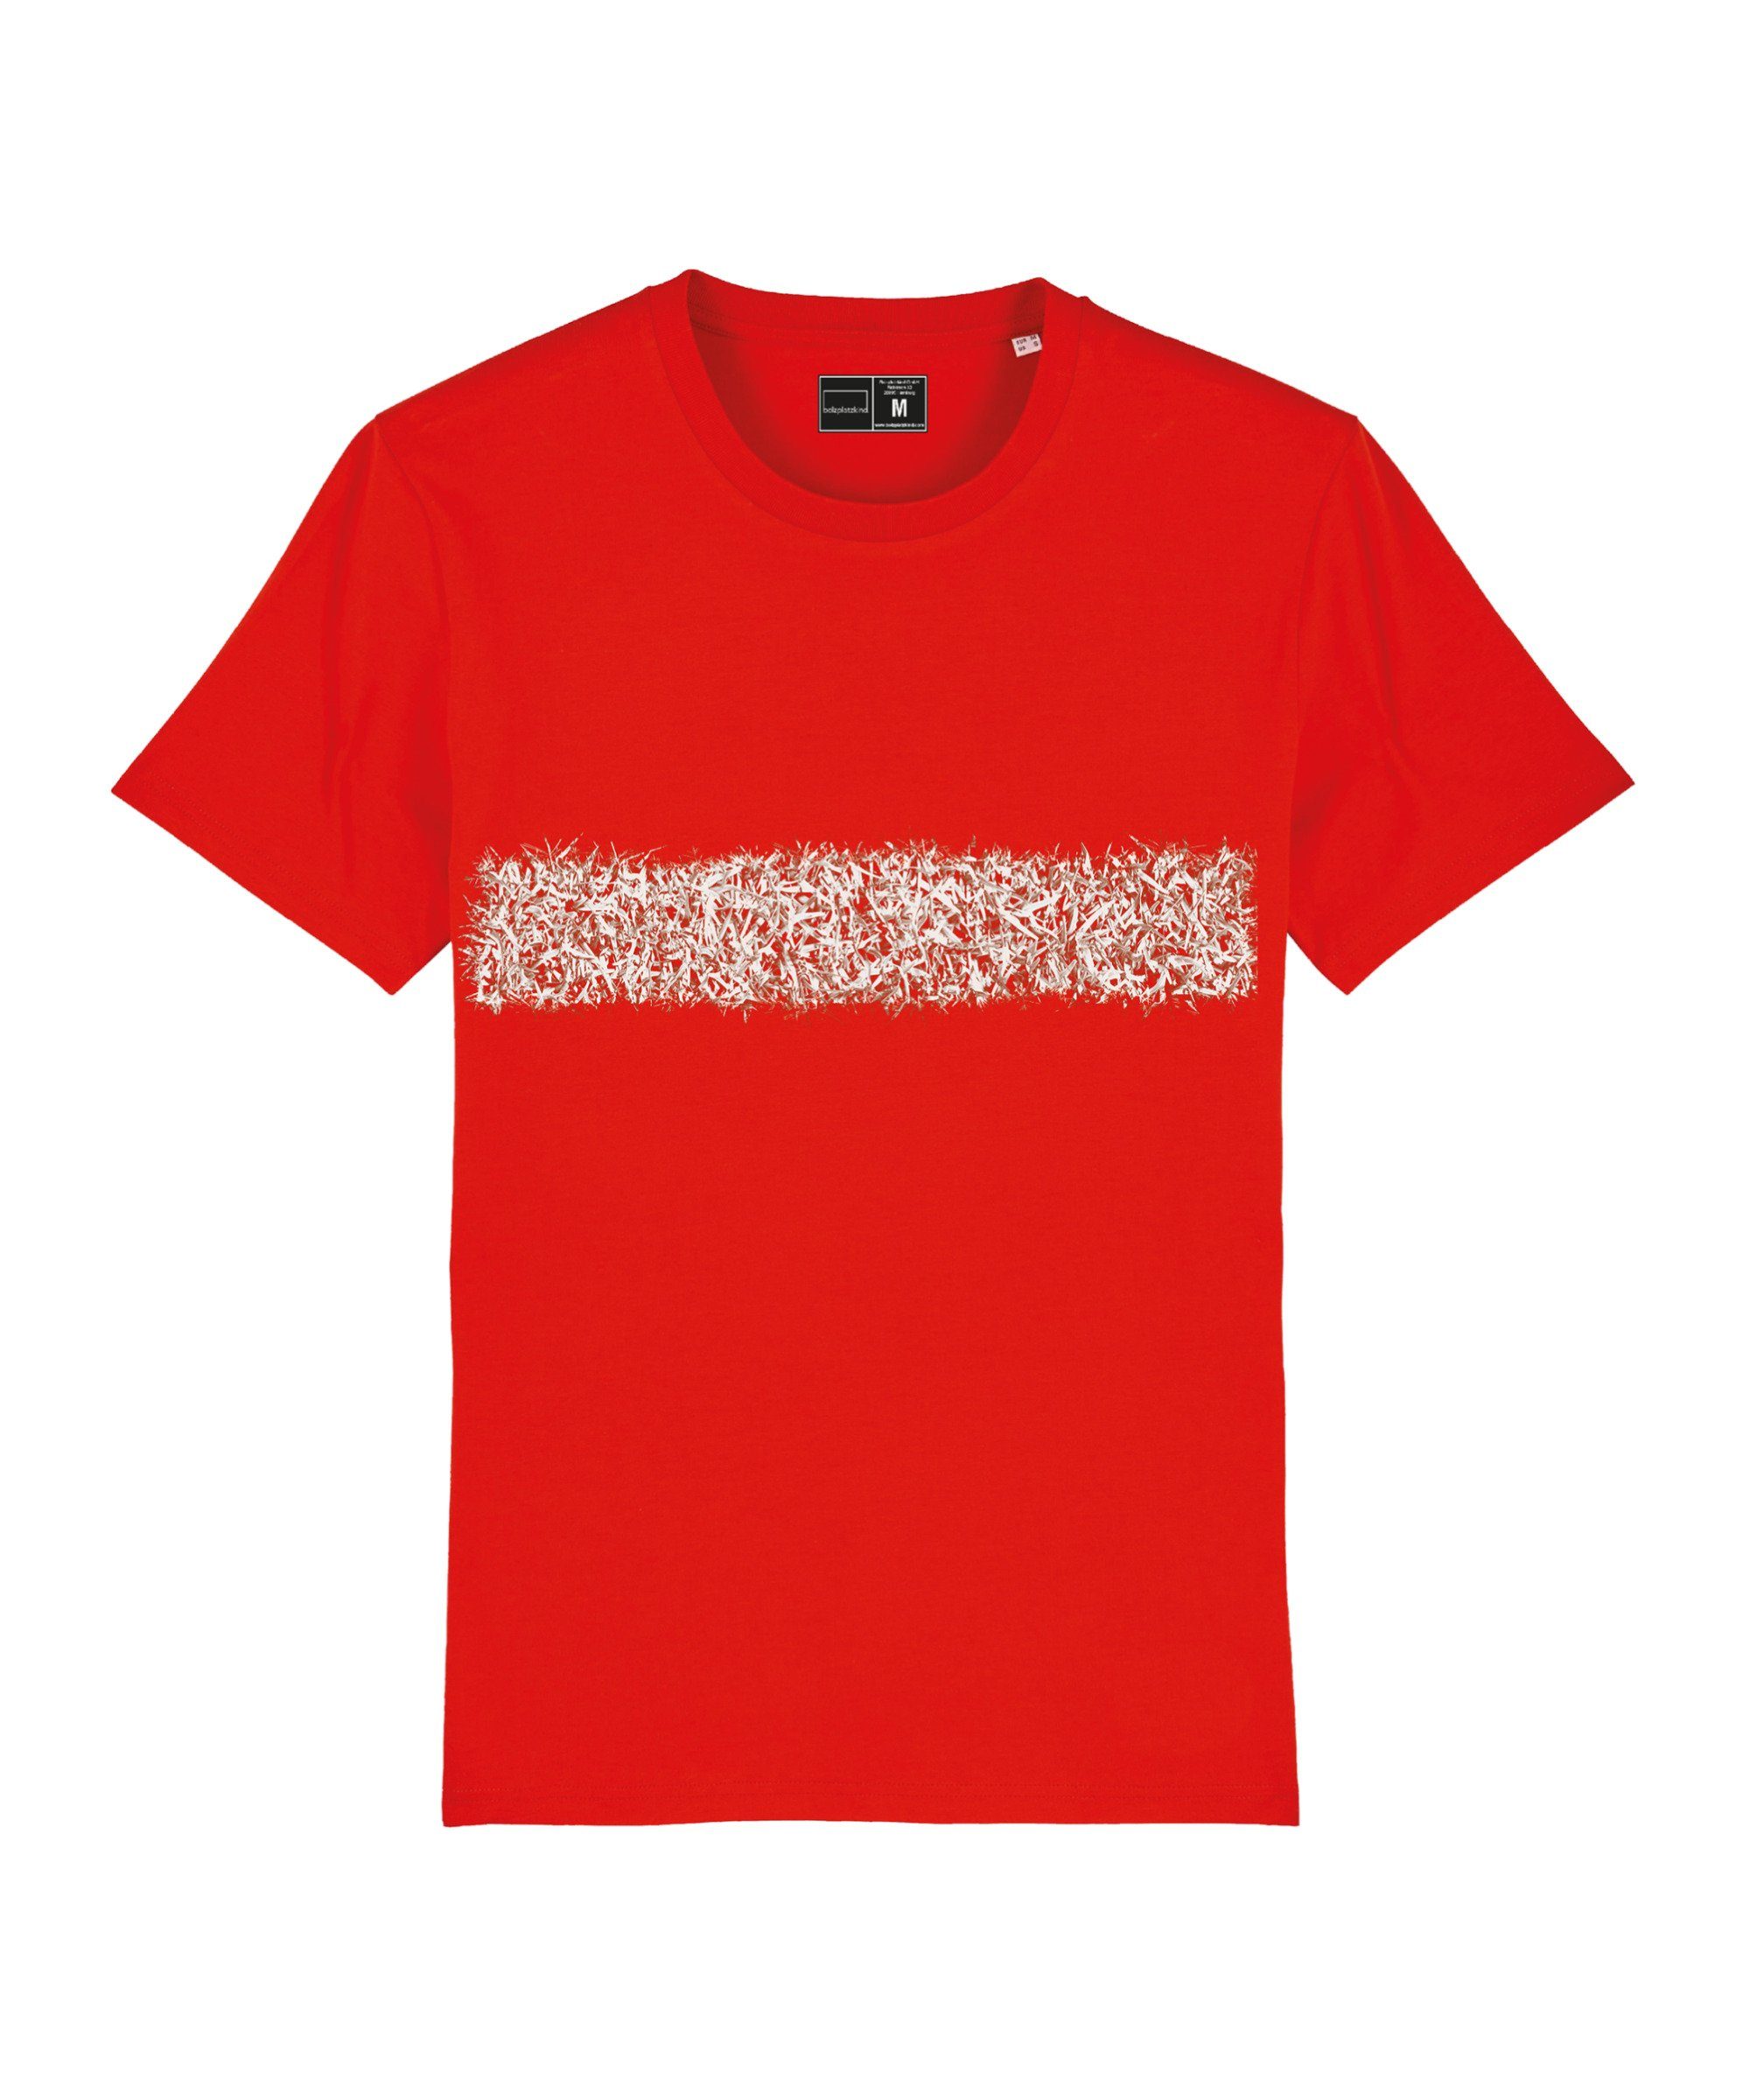 Bolzplatzkind T-Shirt Produkt T-Shirt rot Nachhaltiges "Line-Up"